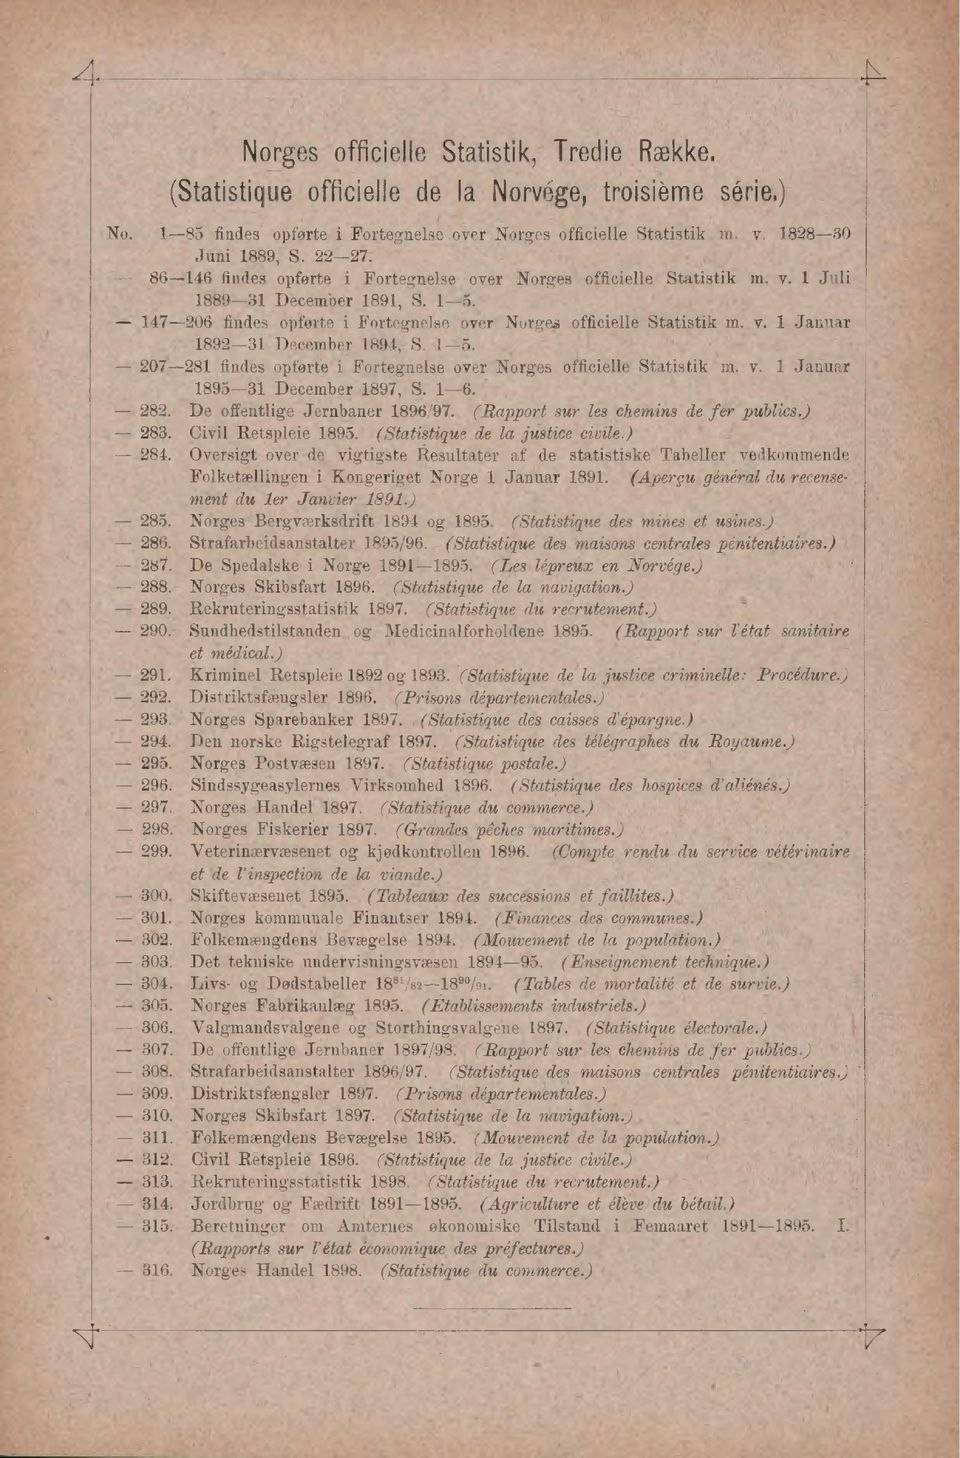 15. 207281 findes opførte i Fortegnelse over Norges officielle Statistik m. v. 1 Januar 189531 December 1897, S. 16. 282. De offentlige Jernbaner 1896/97. (Rapport sur les chemins de fer publics.